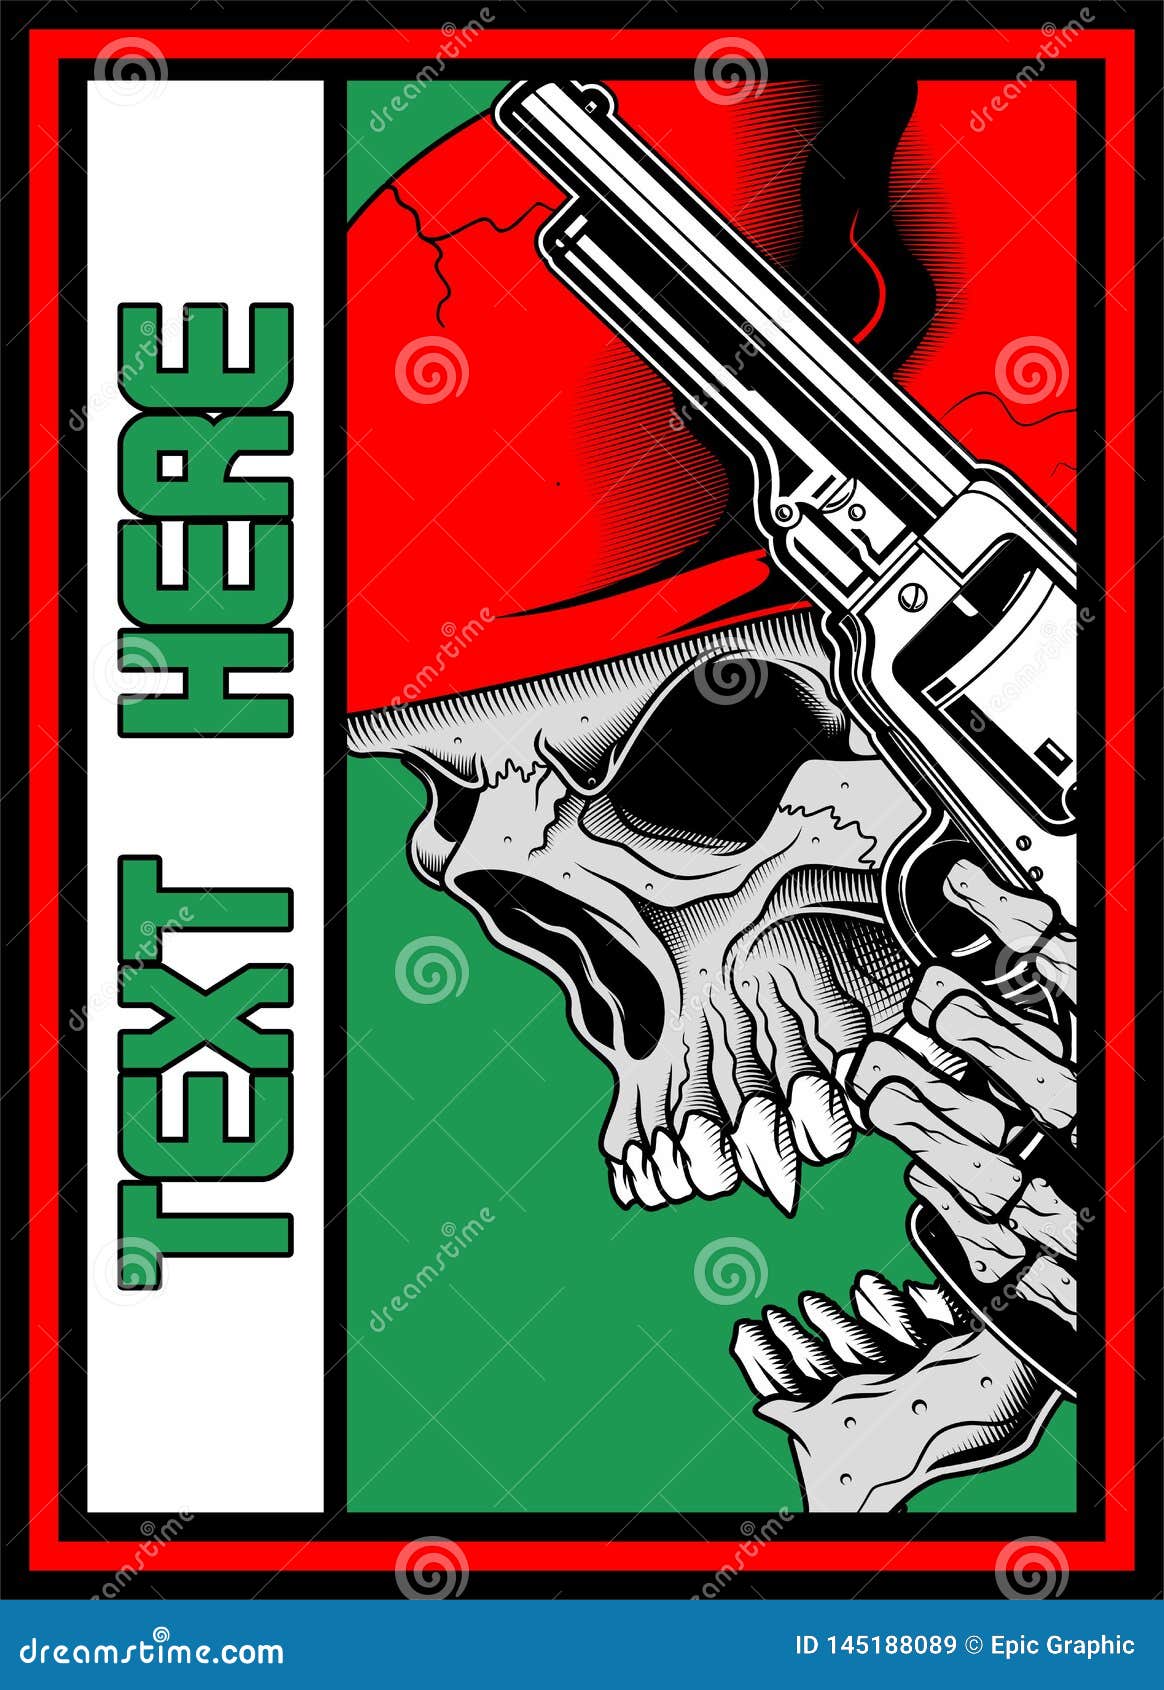 skull with gun iluustration 